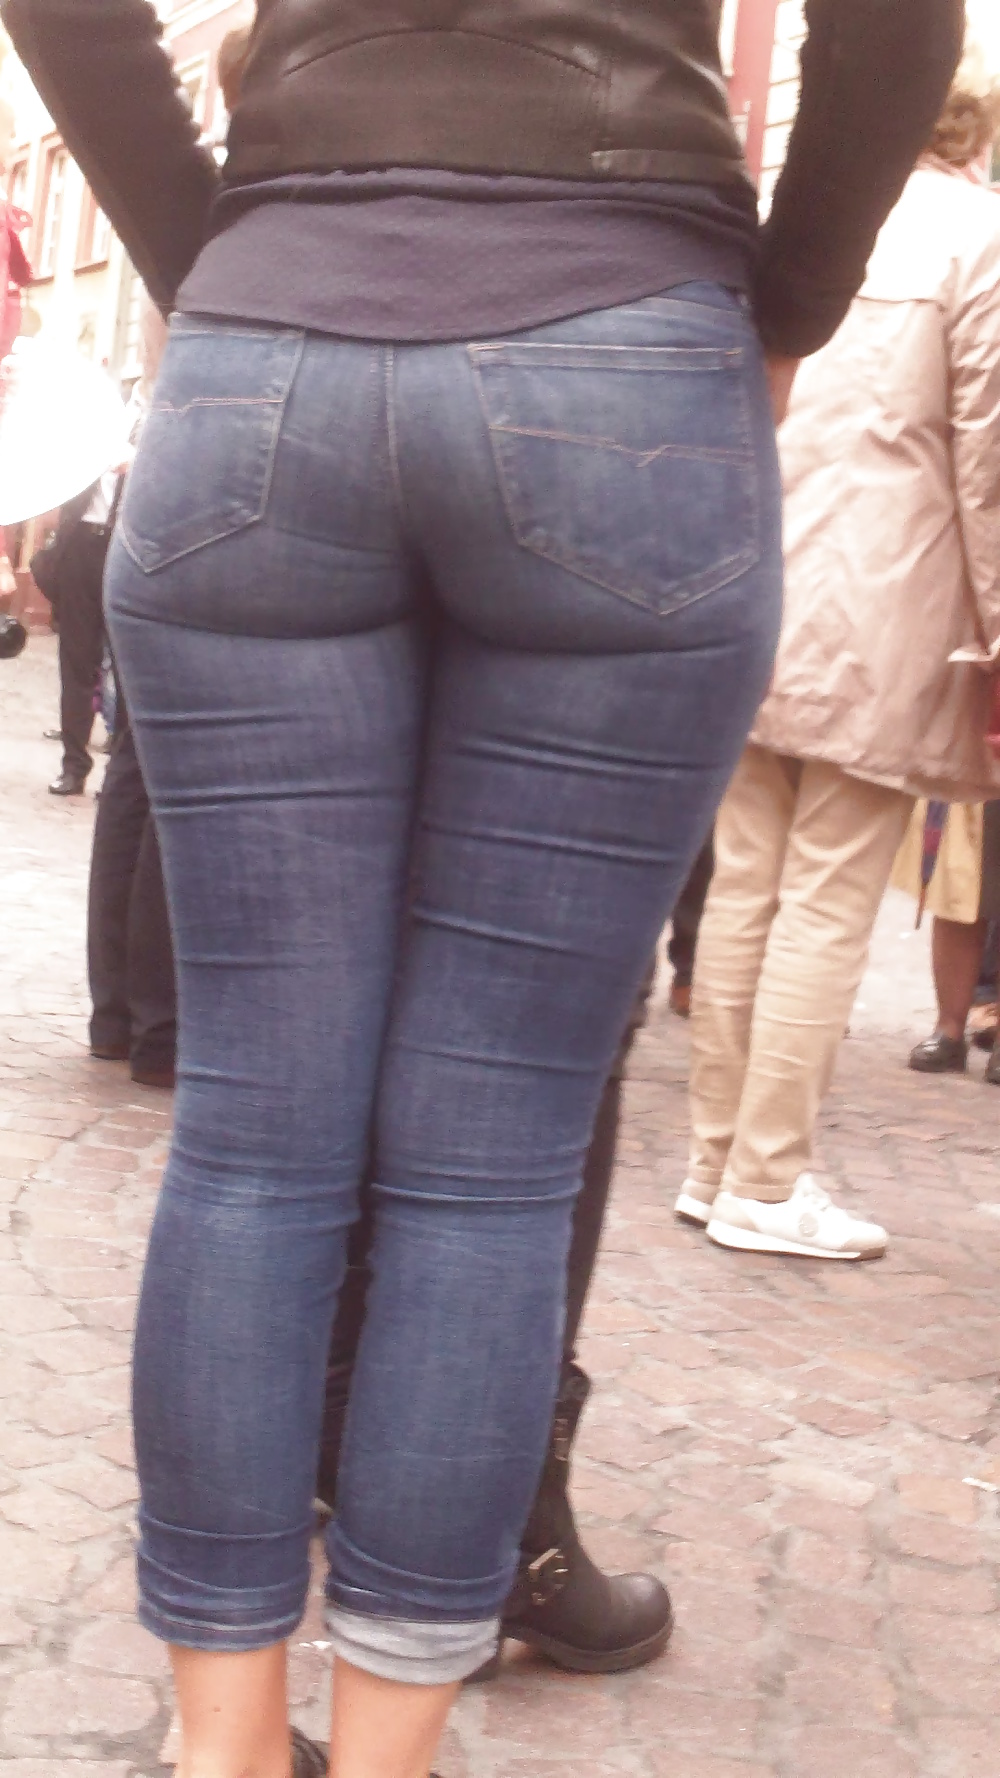 Popular teen girls ass & butt in jeans Part 6 #32010425